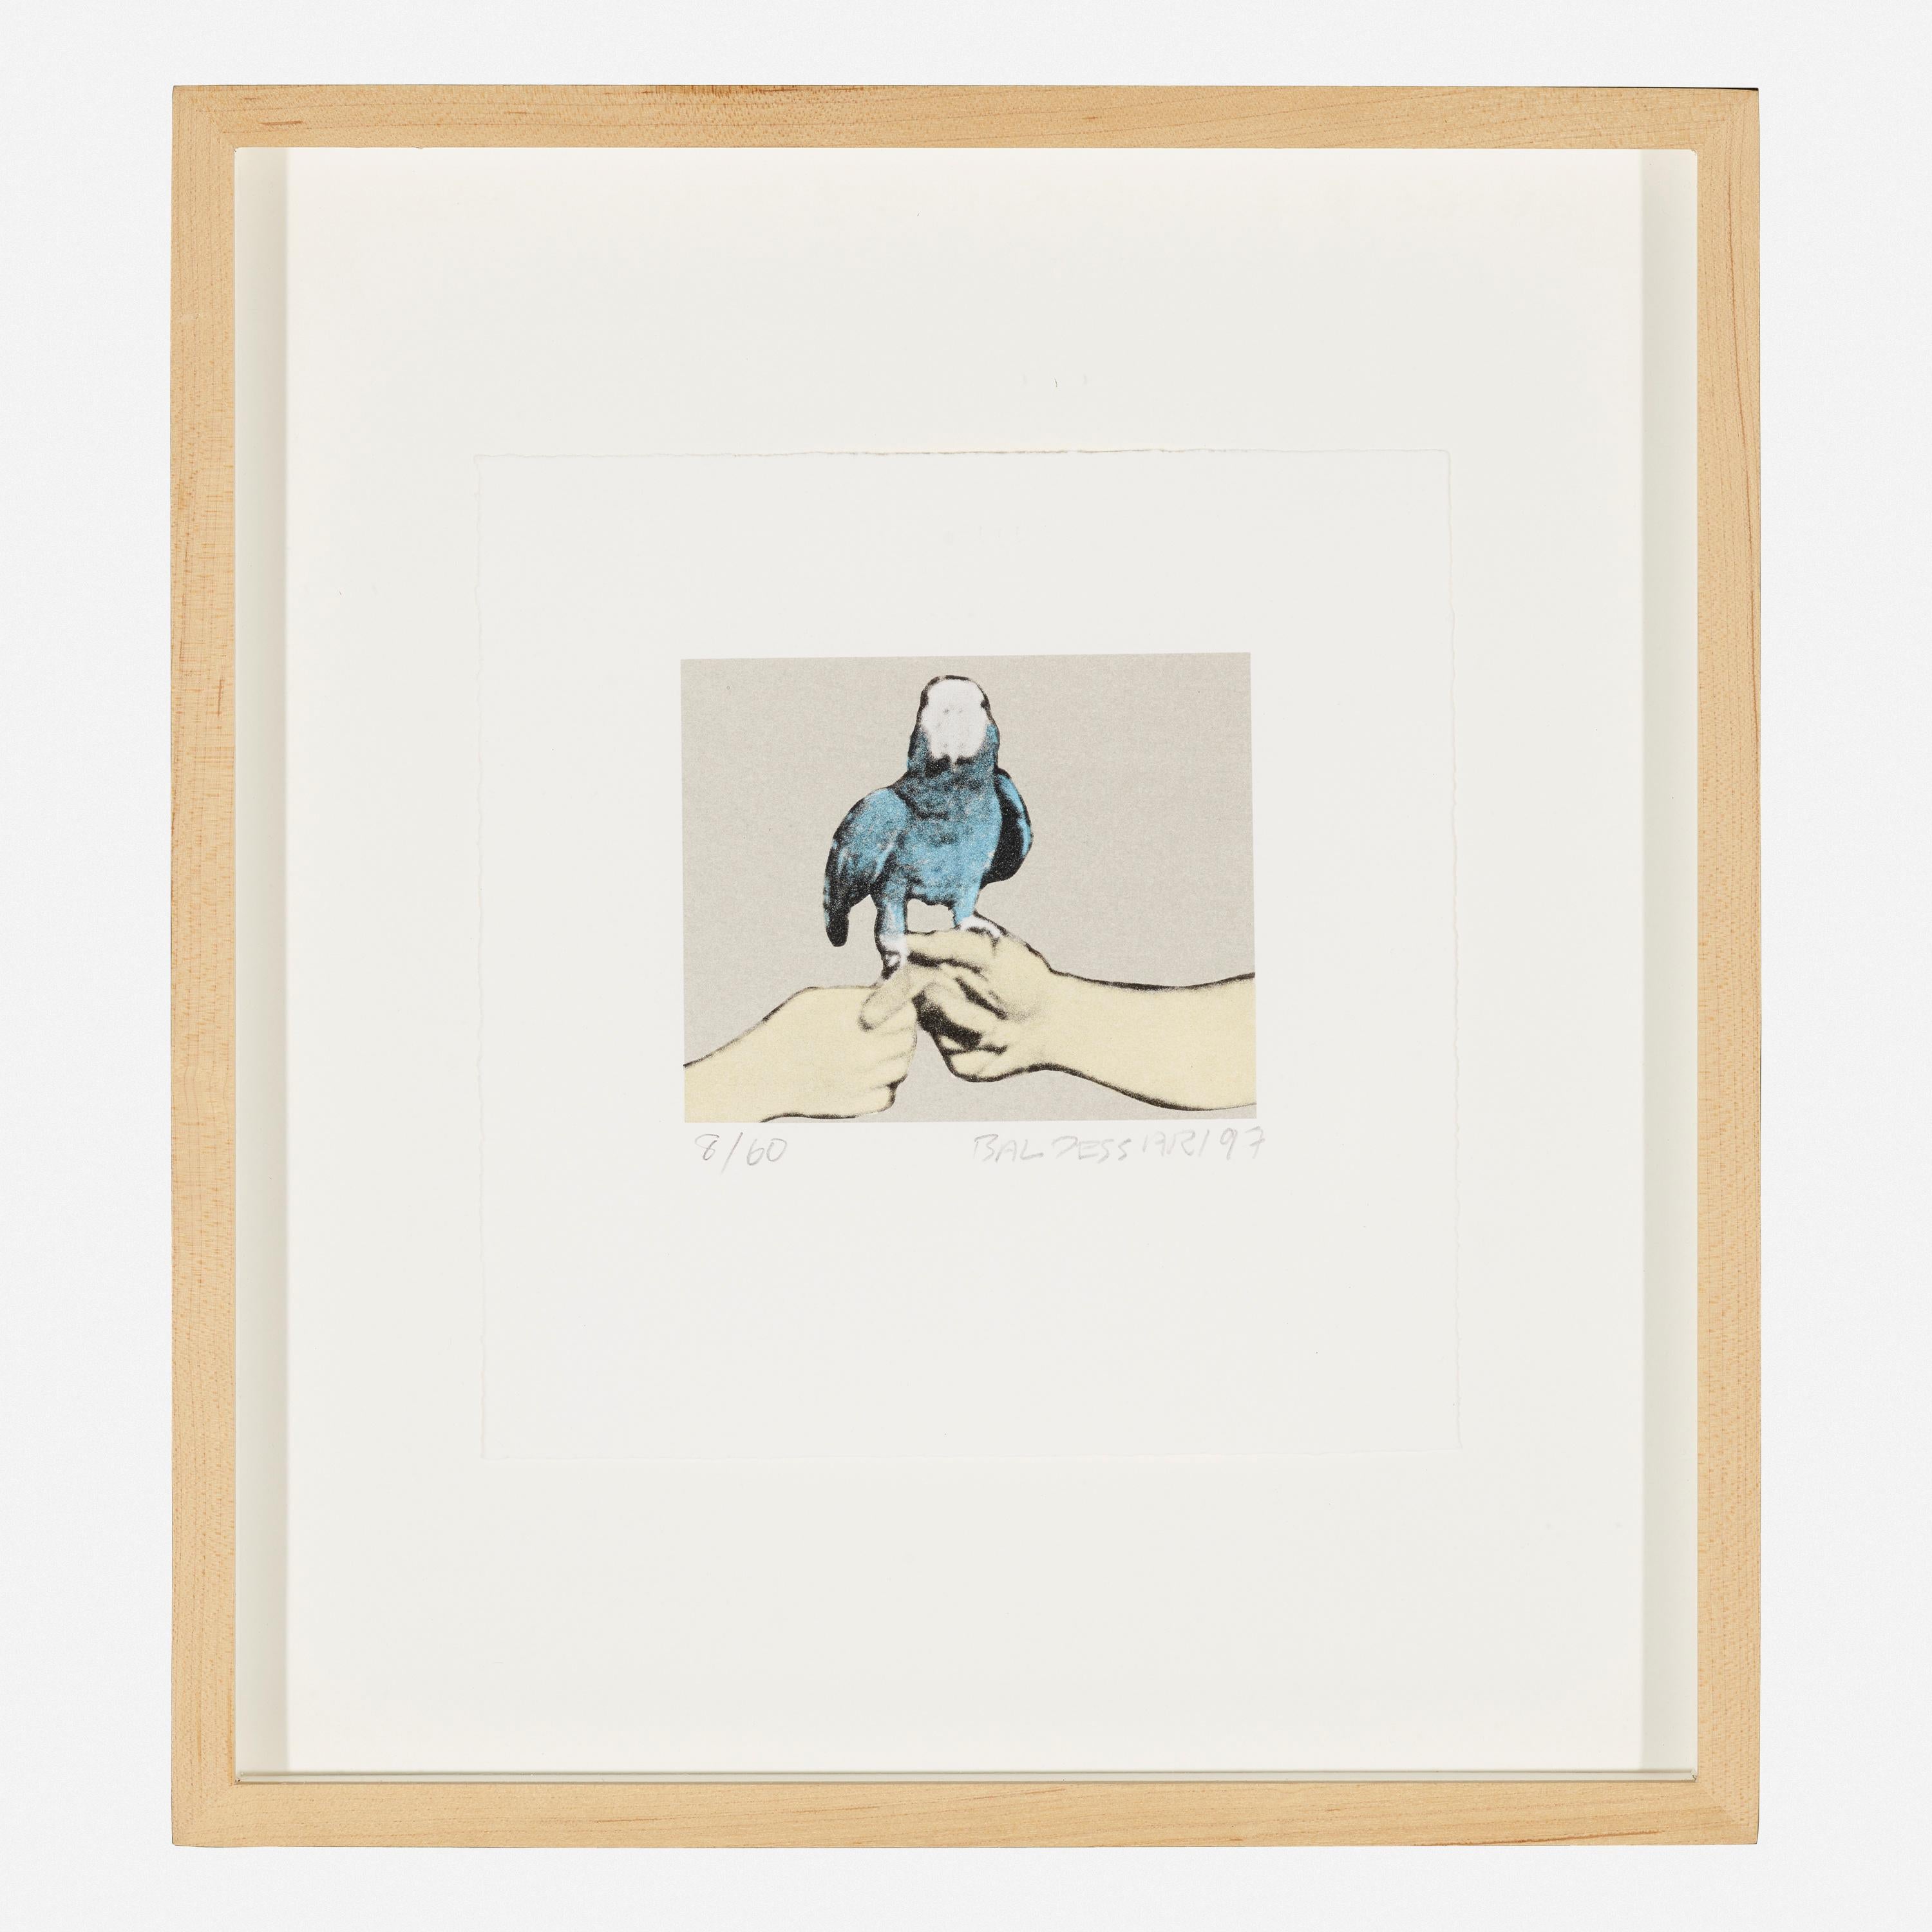 John Baldessari (1931-2020)
Gremium #2 , 1997
Aus der Serie Zwei Pferde mit Reitern (mit Blue Parrot)
Farblithographie auf Rives BFK Papier
Signiert, datiert und nummeriert am unteren Rand "8/60 Baldessari 97". 
Ausgabe 8 von 60.
Blatt: 7½ h × 7¼ w